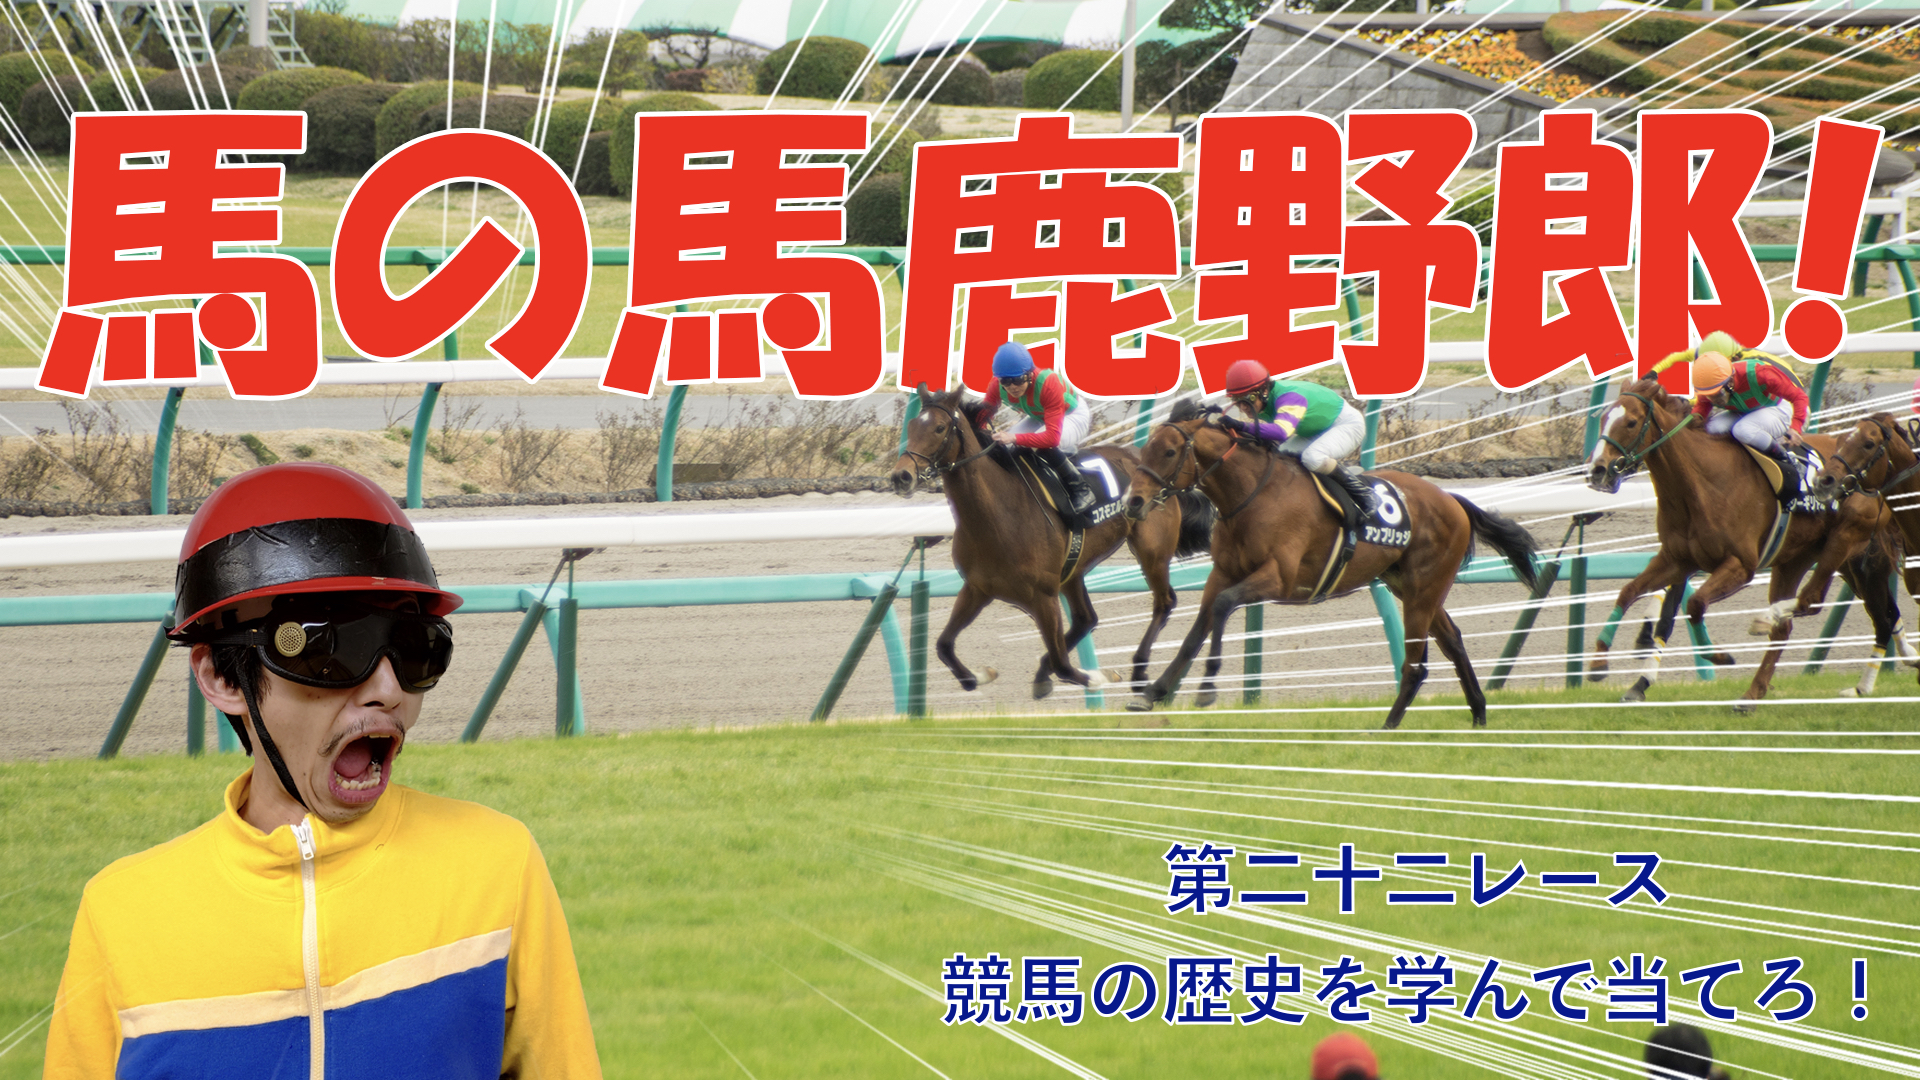 【競馬】競馬の解説や予想、競馬のイロハをわかりやすく説明を毎日投稿！今回は競馬の歴史についてお話しします。日本のサラブレッドの祖先は１頭のみ！